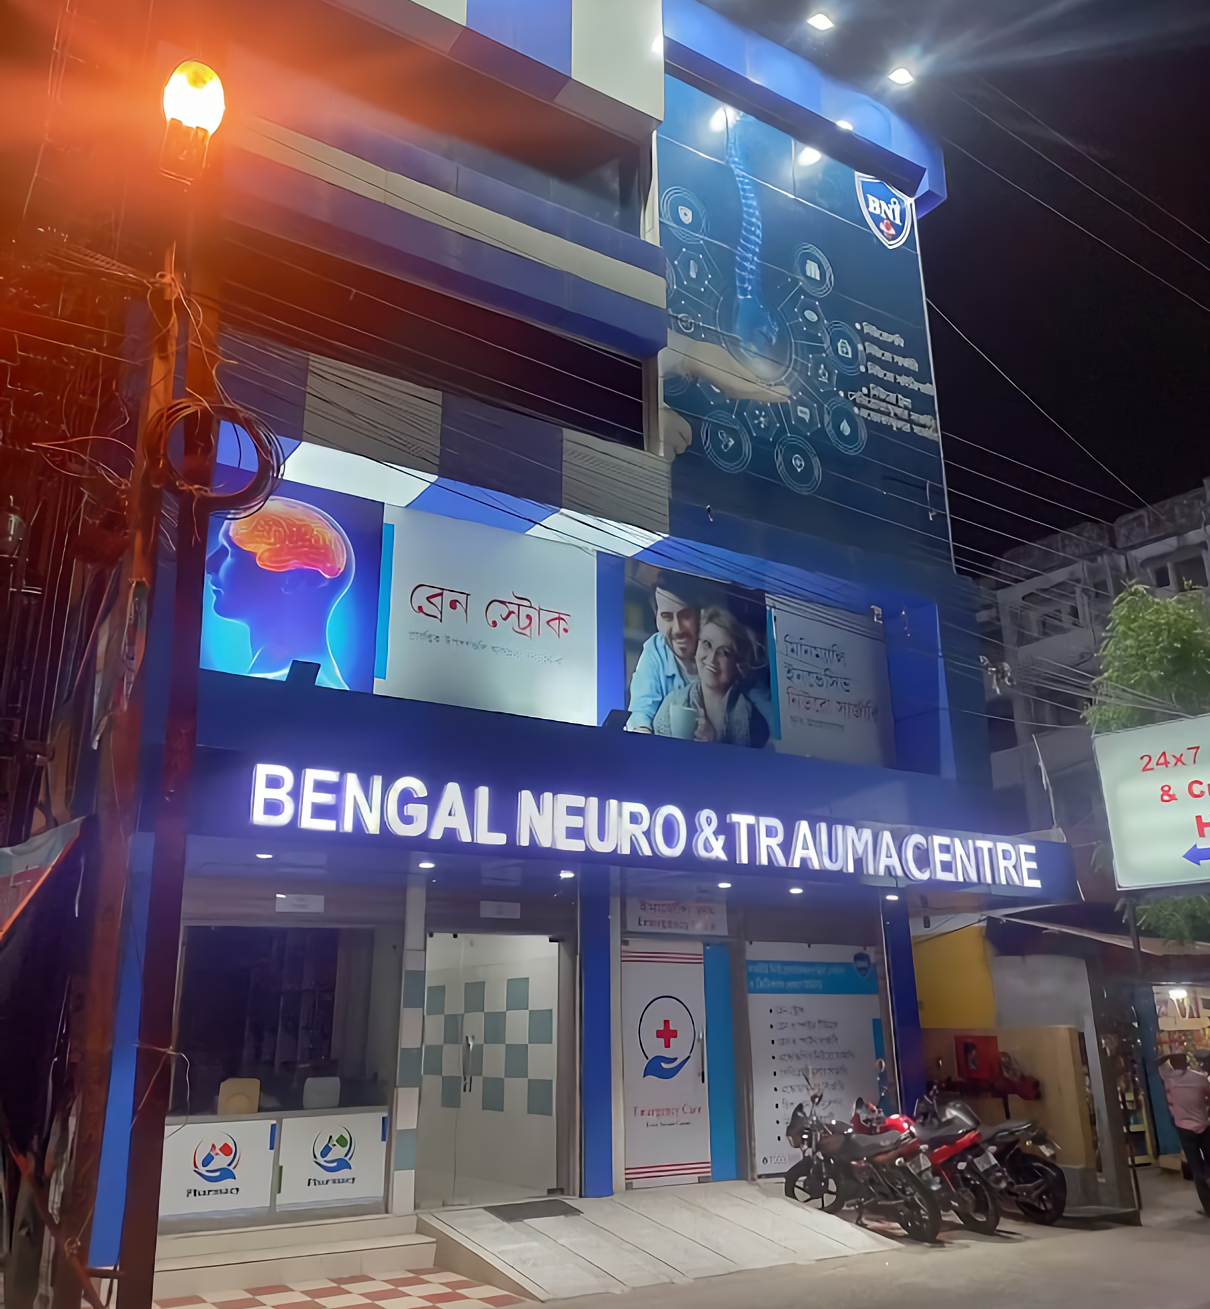 Bengal Neuro & Trauma Centre